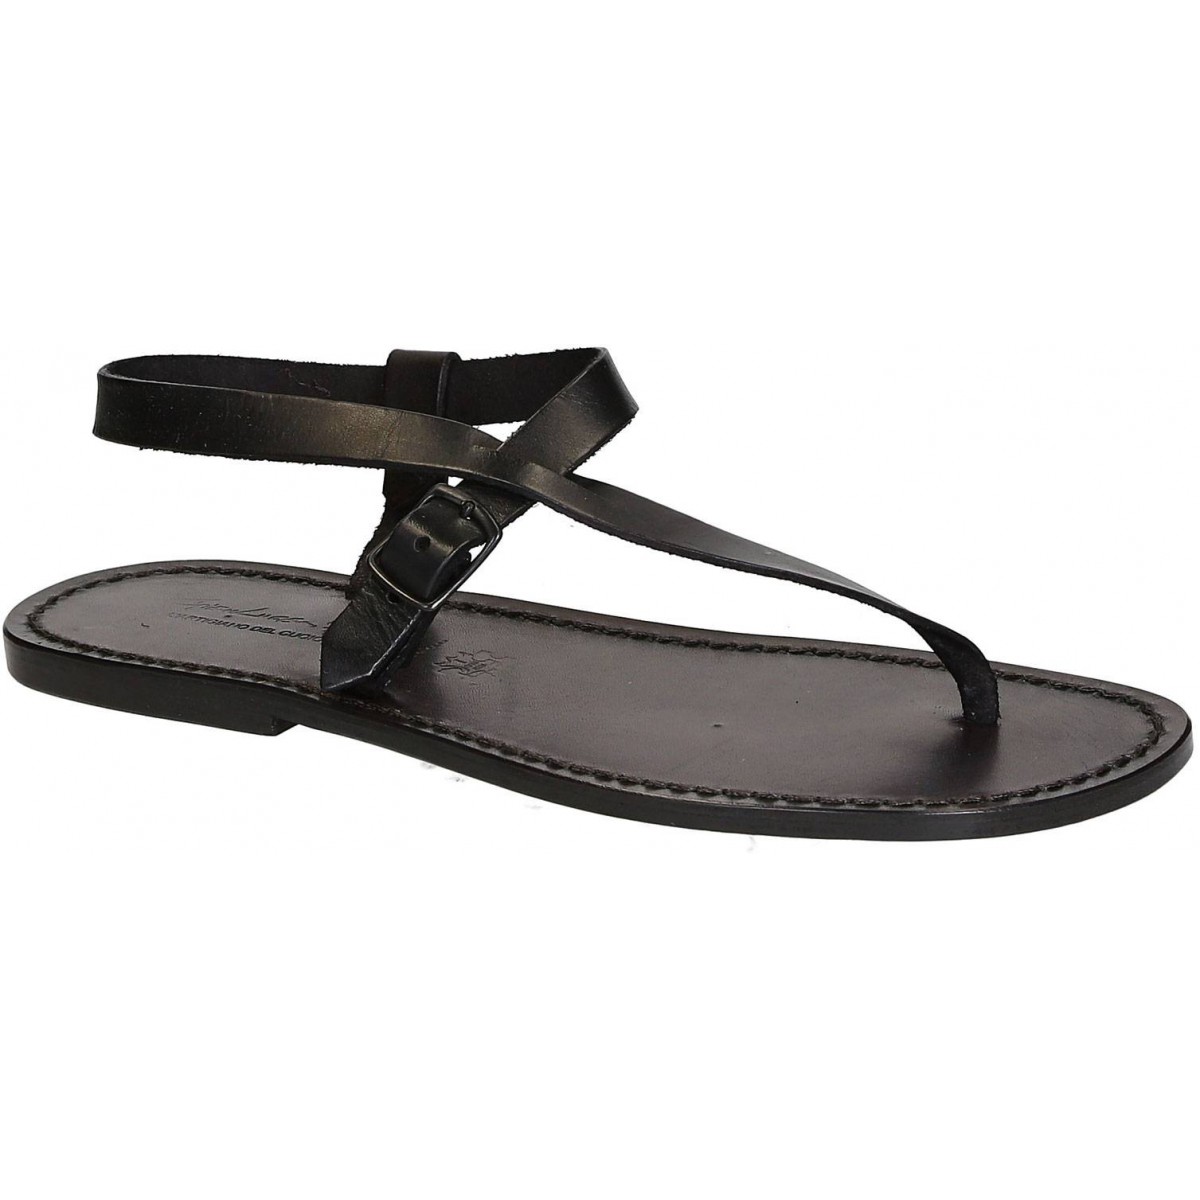 Inblu BU000008 Casual flat sandals for men in brown-sgquangbinhtourist.com.vn